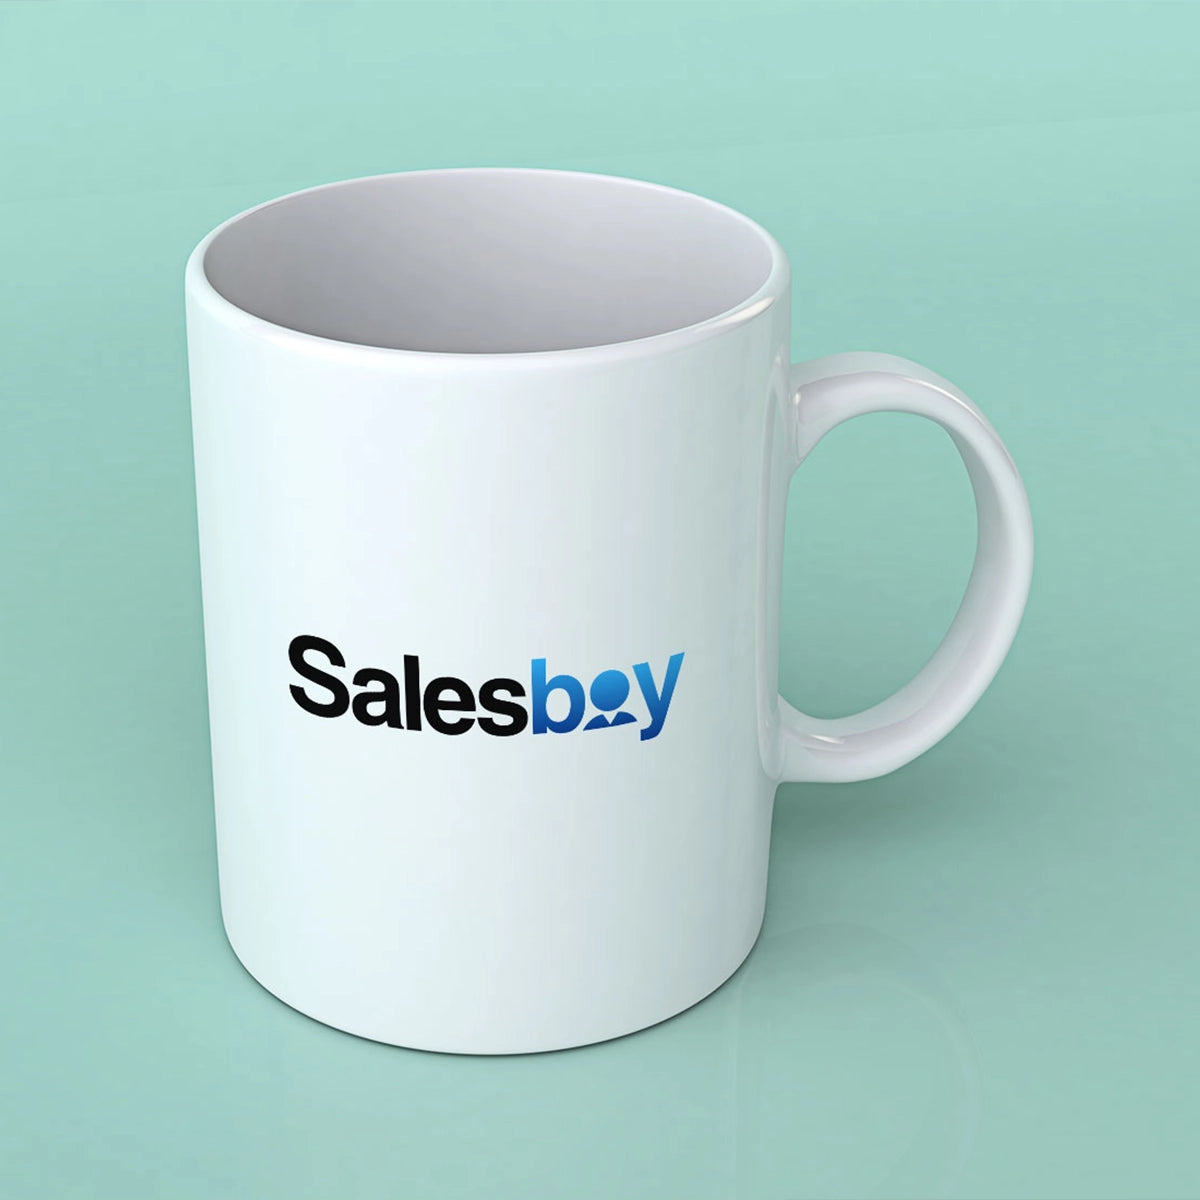 salesboy.com